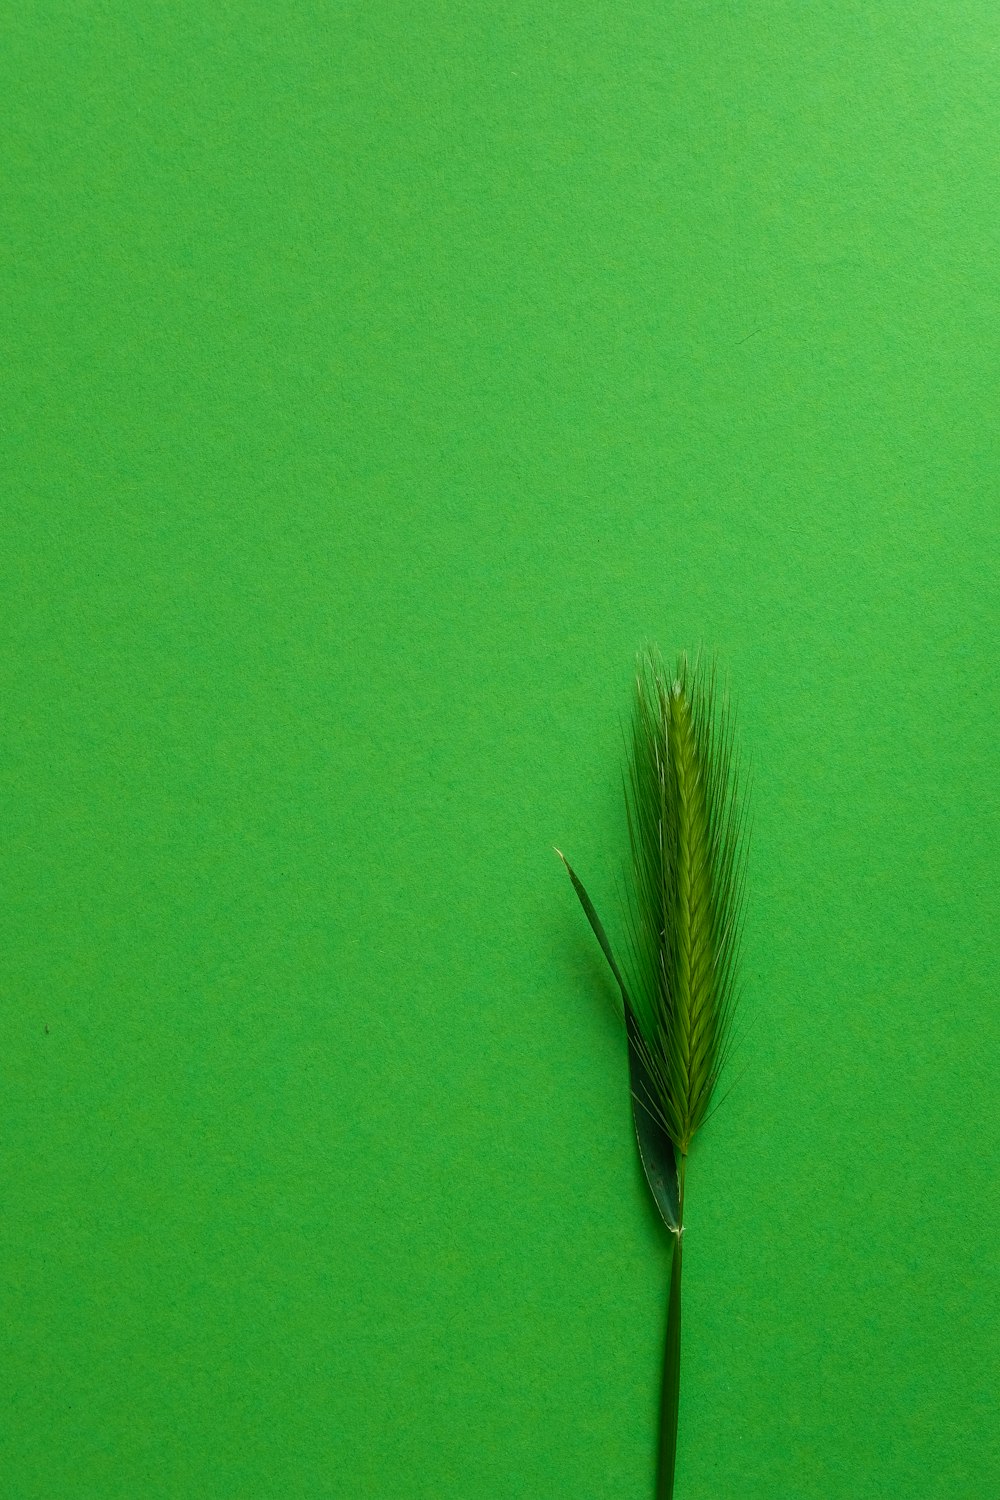 piuma verde e marrone su tessuto verde